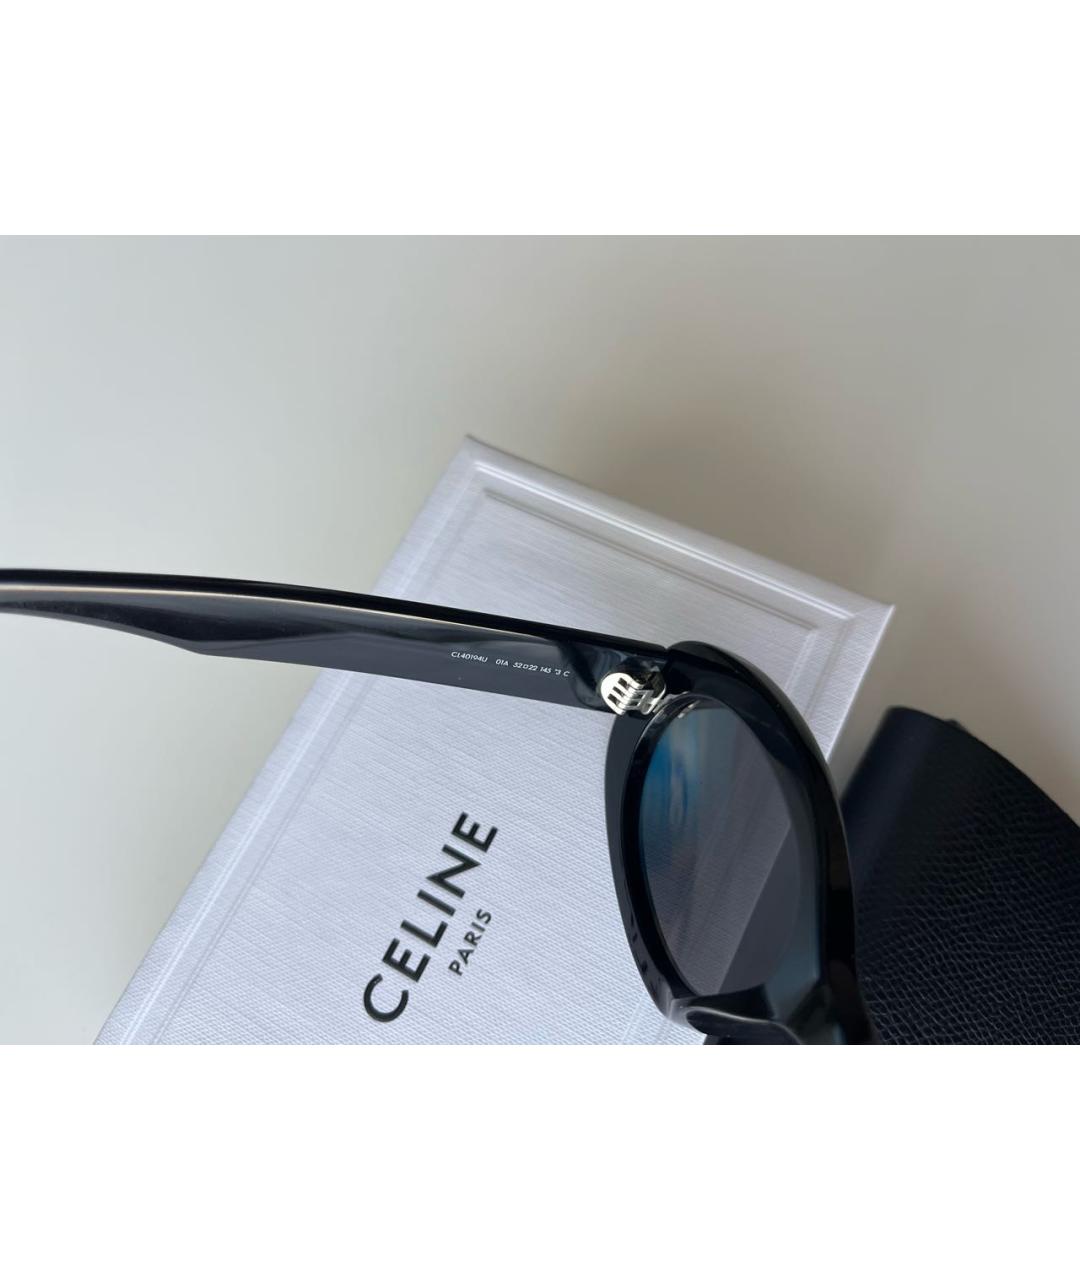 CELINE Черные пластиковые солнцезащитные очки, фото 3